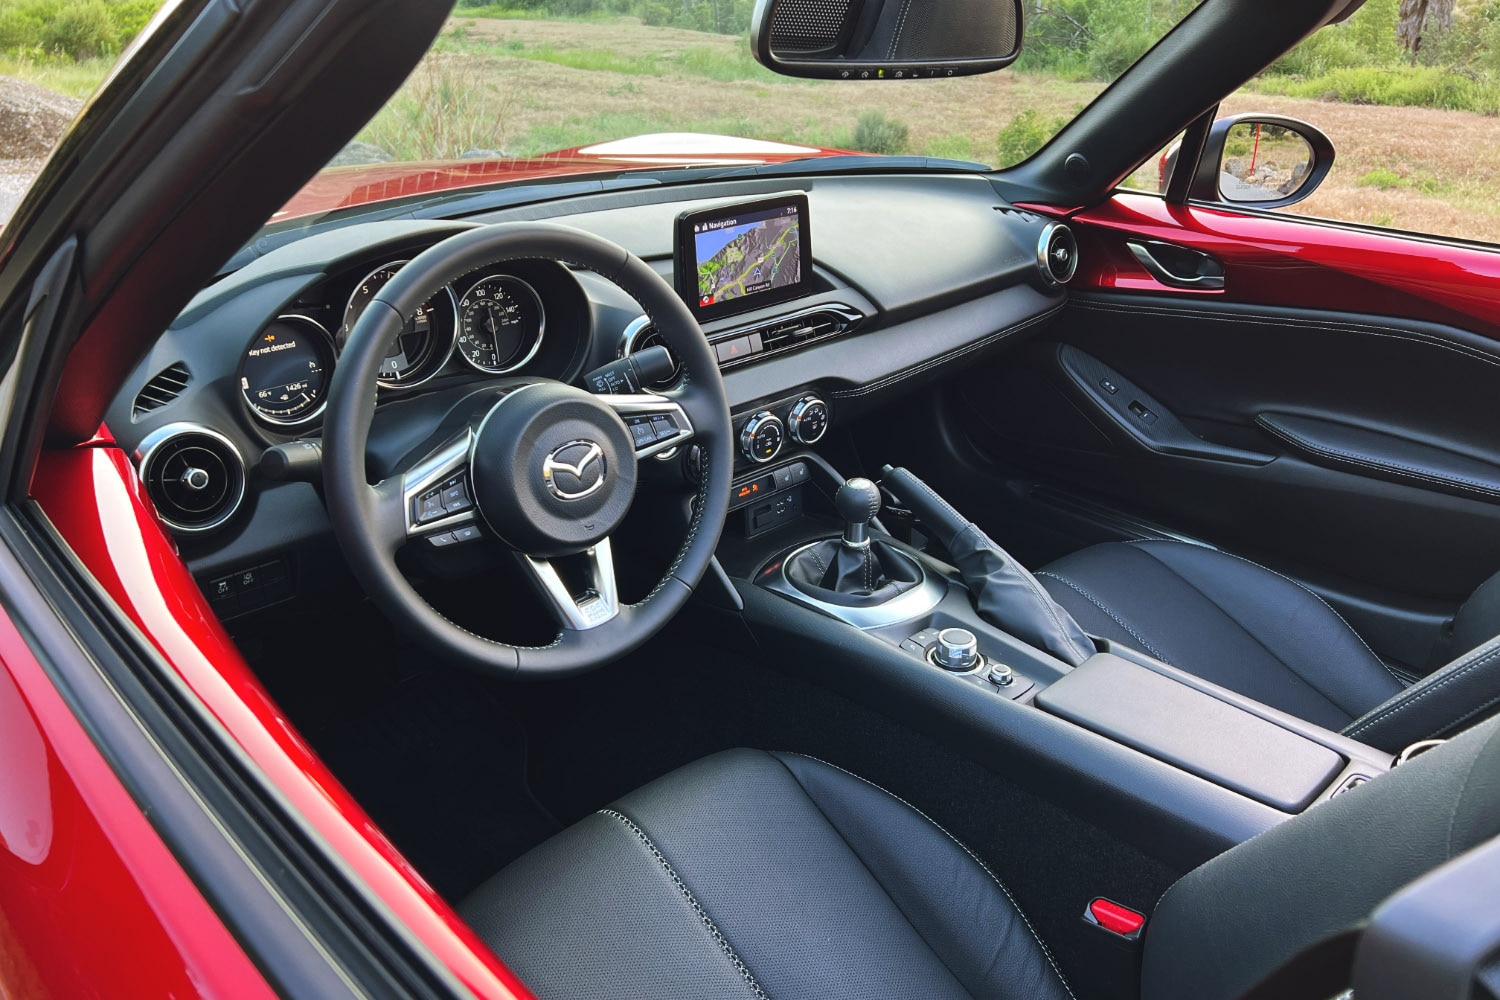 2023 Mazda MX-5 Miata Grand Touring interior, dashboard, and front seats